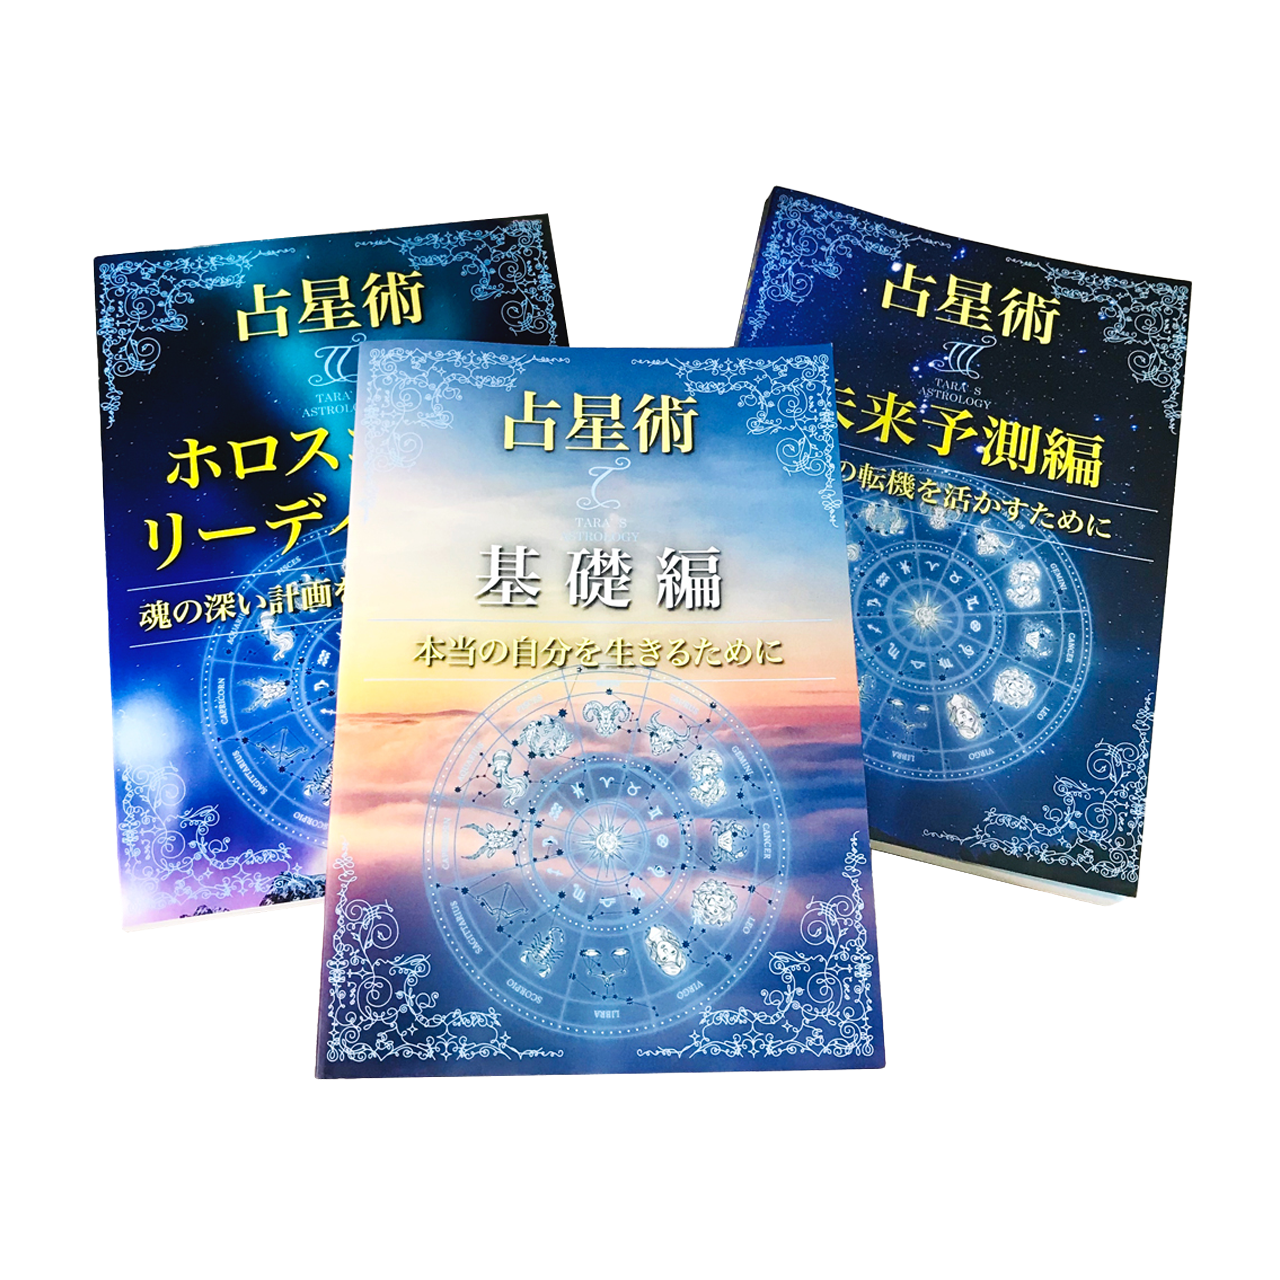 Shop　素敵な未来へ変える魔法のようなテキスト「ターラの占星術ⅠⅡⅢ」3冊セット　Taara's